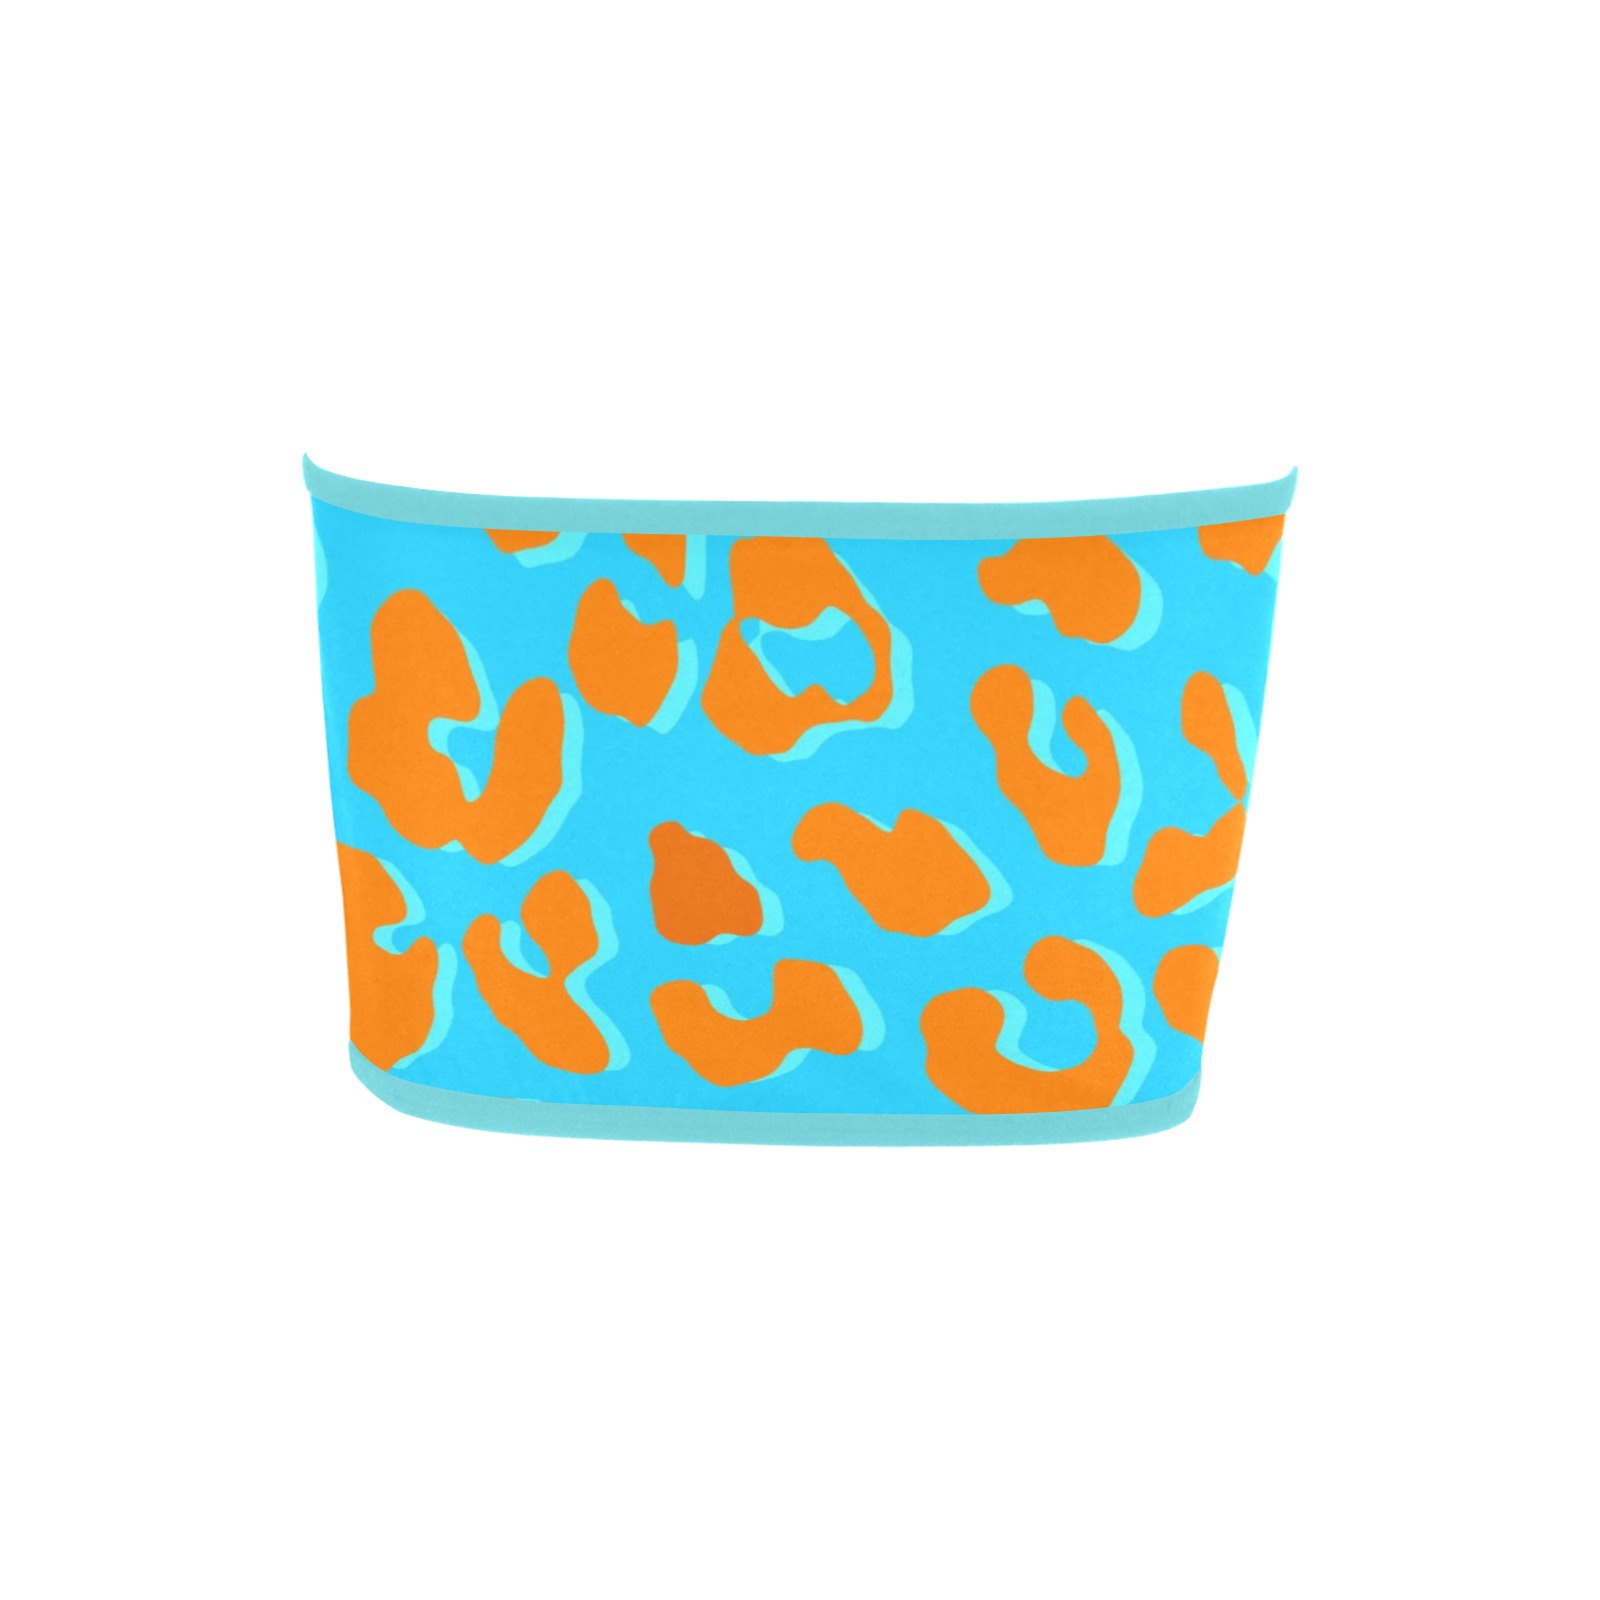 Leopard Print Orange Blue Bandeau Top